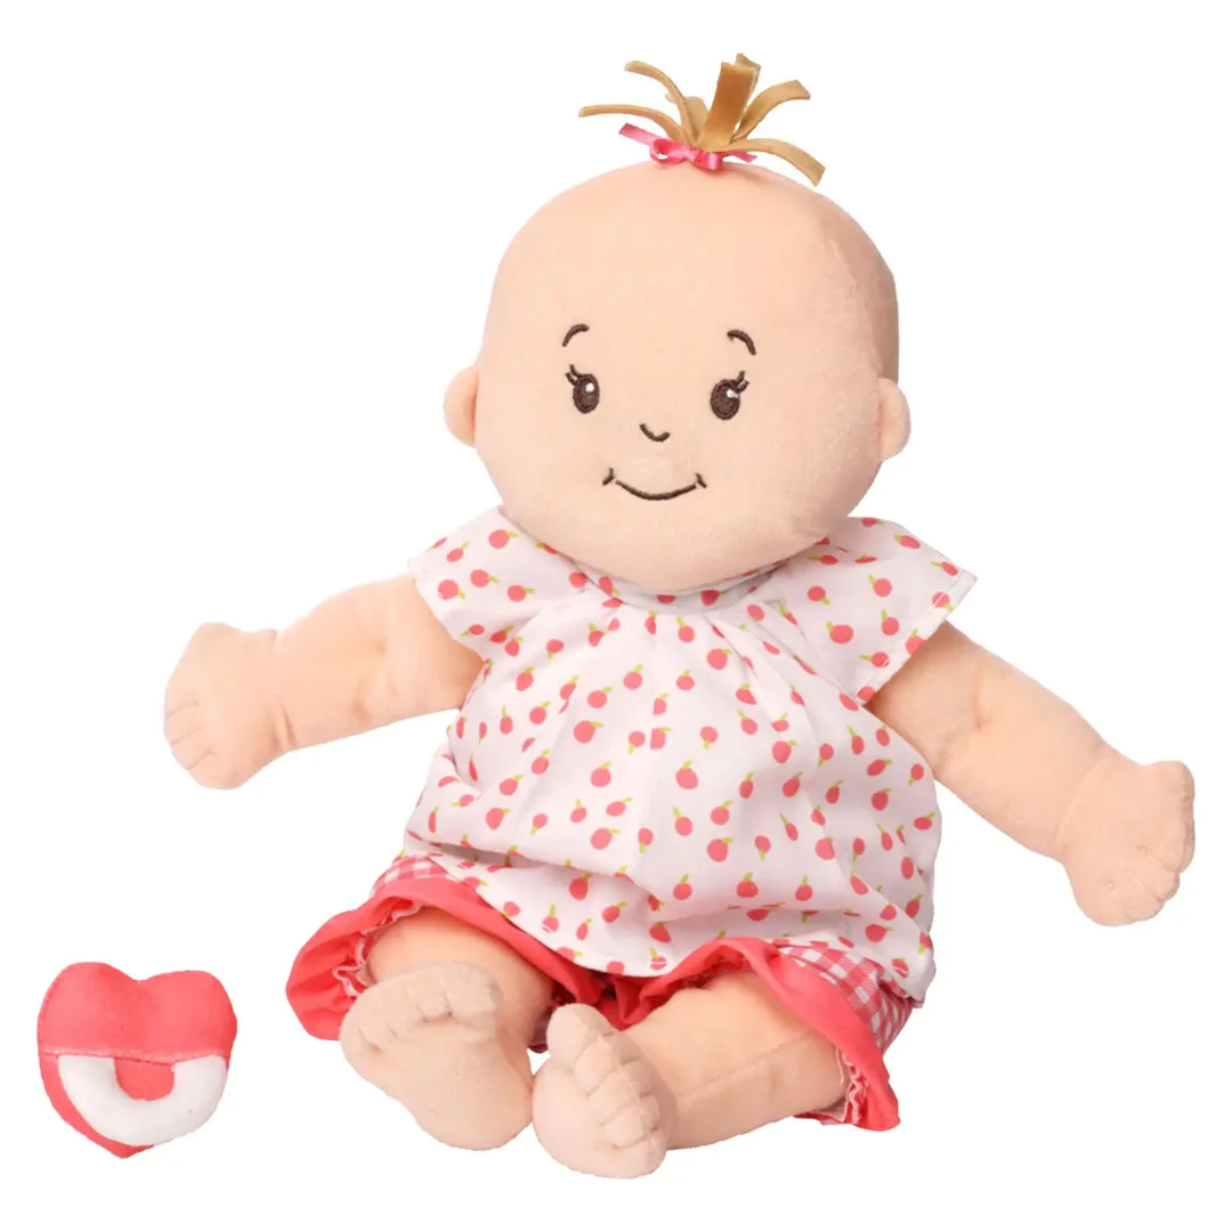 Baby Stella Peach Doll - Light Brown Hair